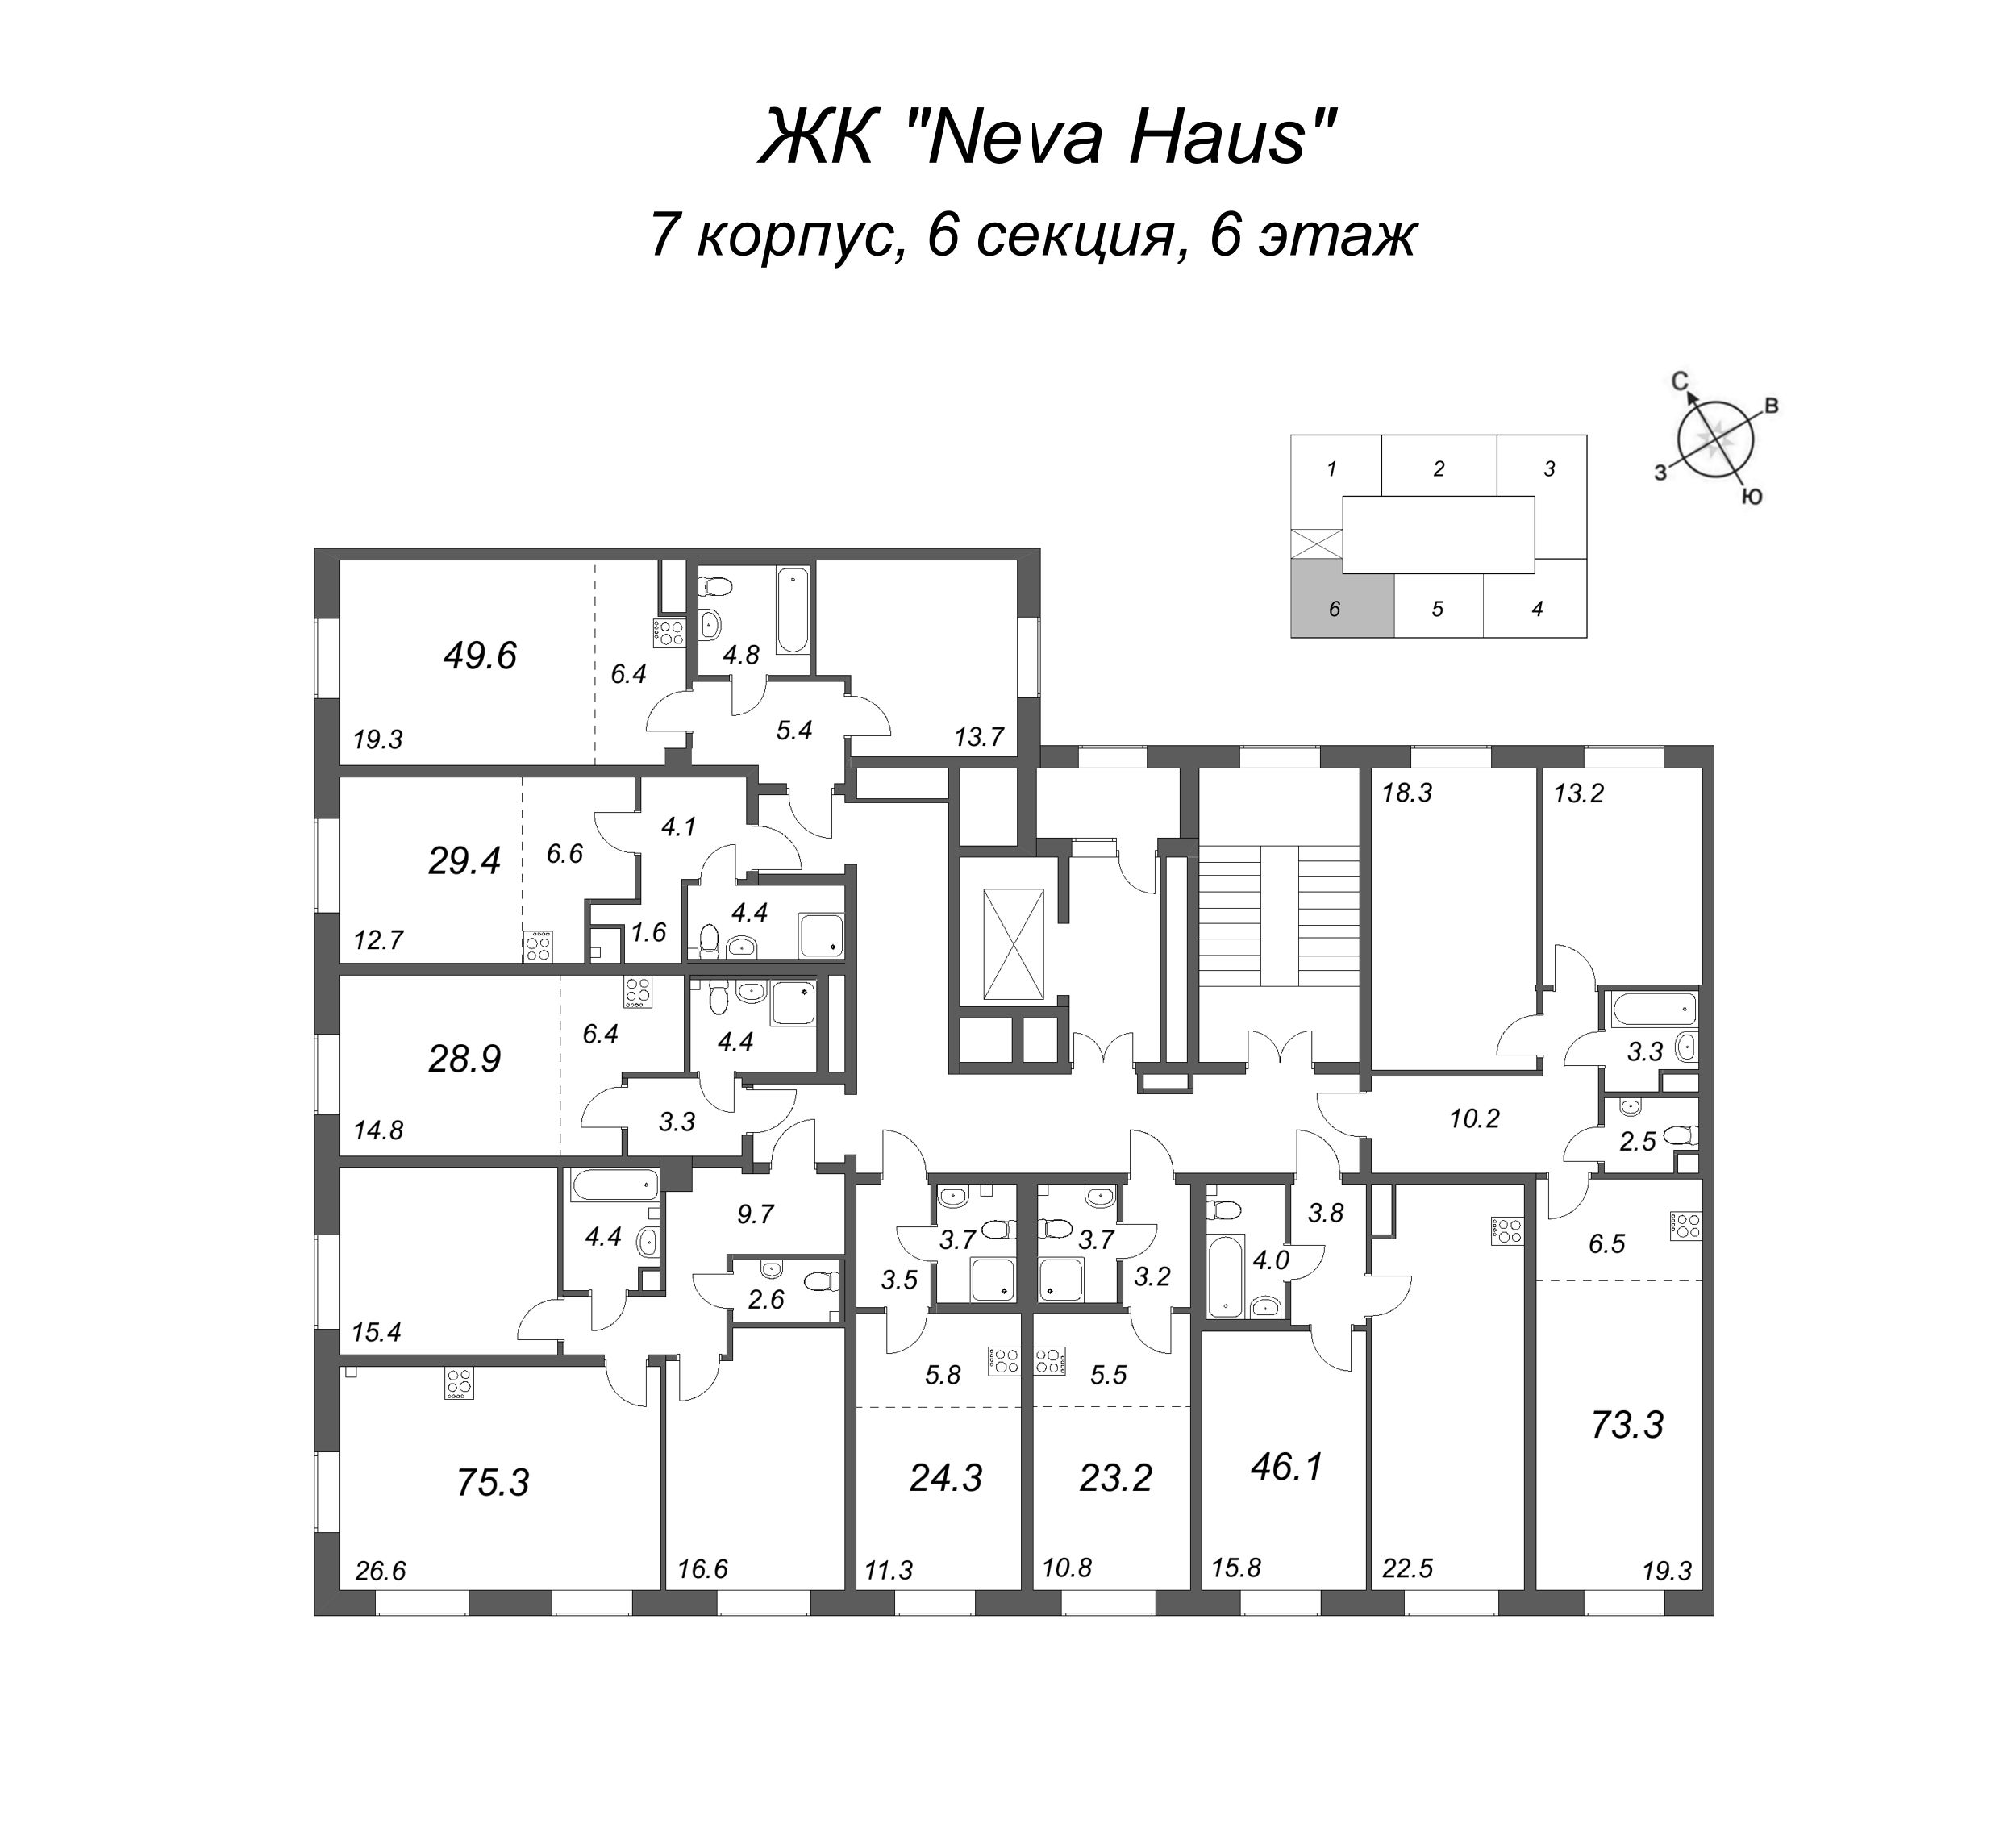 3-комнатная (Евро) квартира, 73.5 м² в ЖК "Neva Haus" - планировка этажа